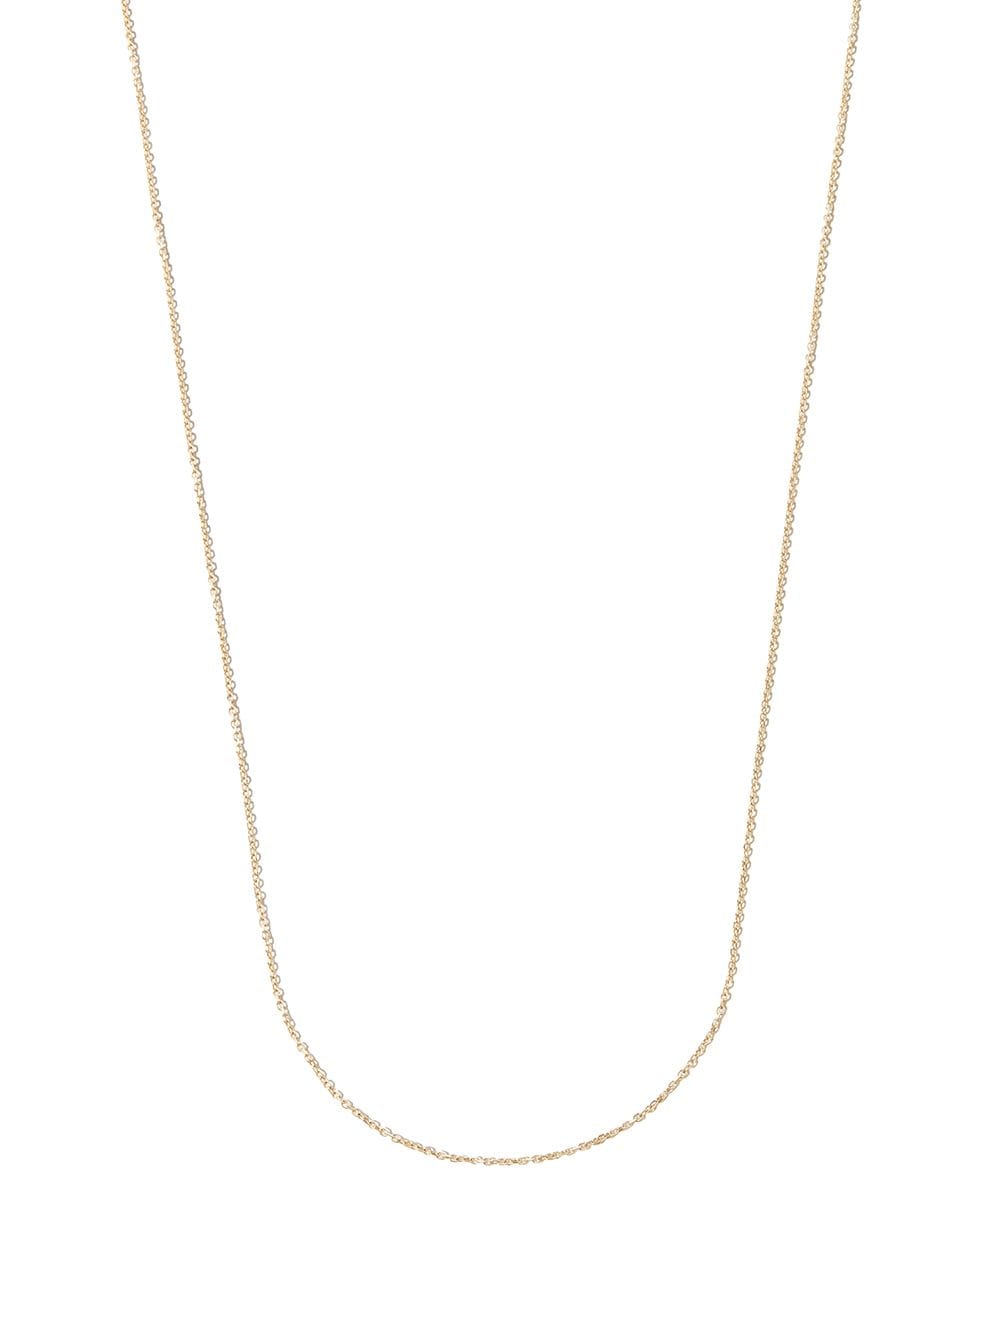 Lauren Rubinski 14kt yellow gold chain necklace von Lauren Rubinski